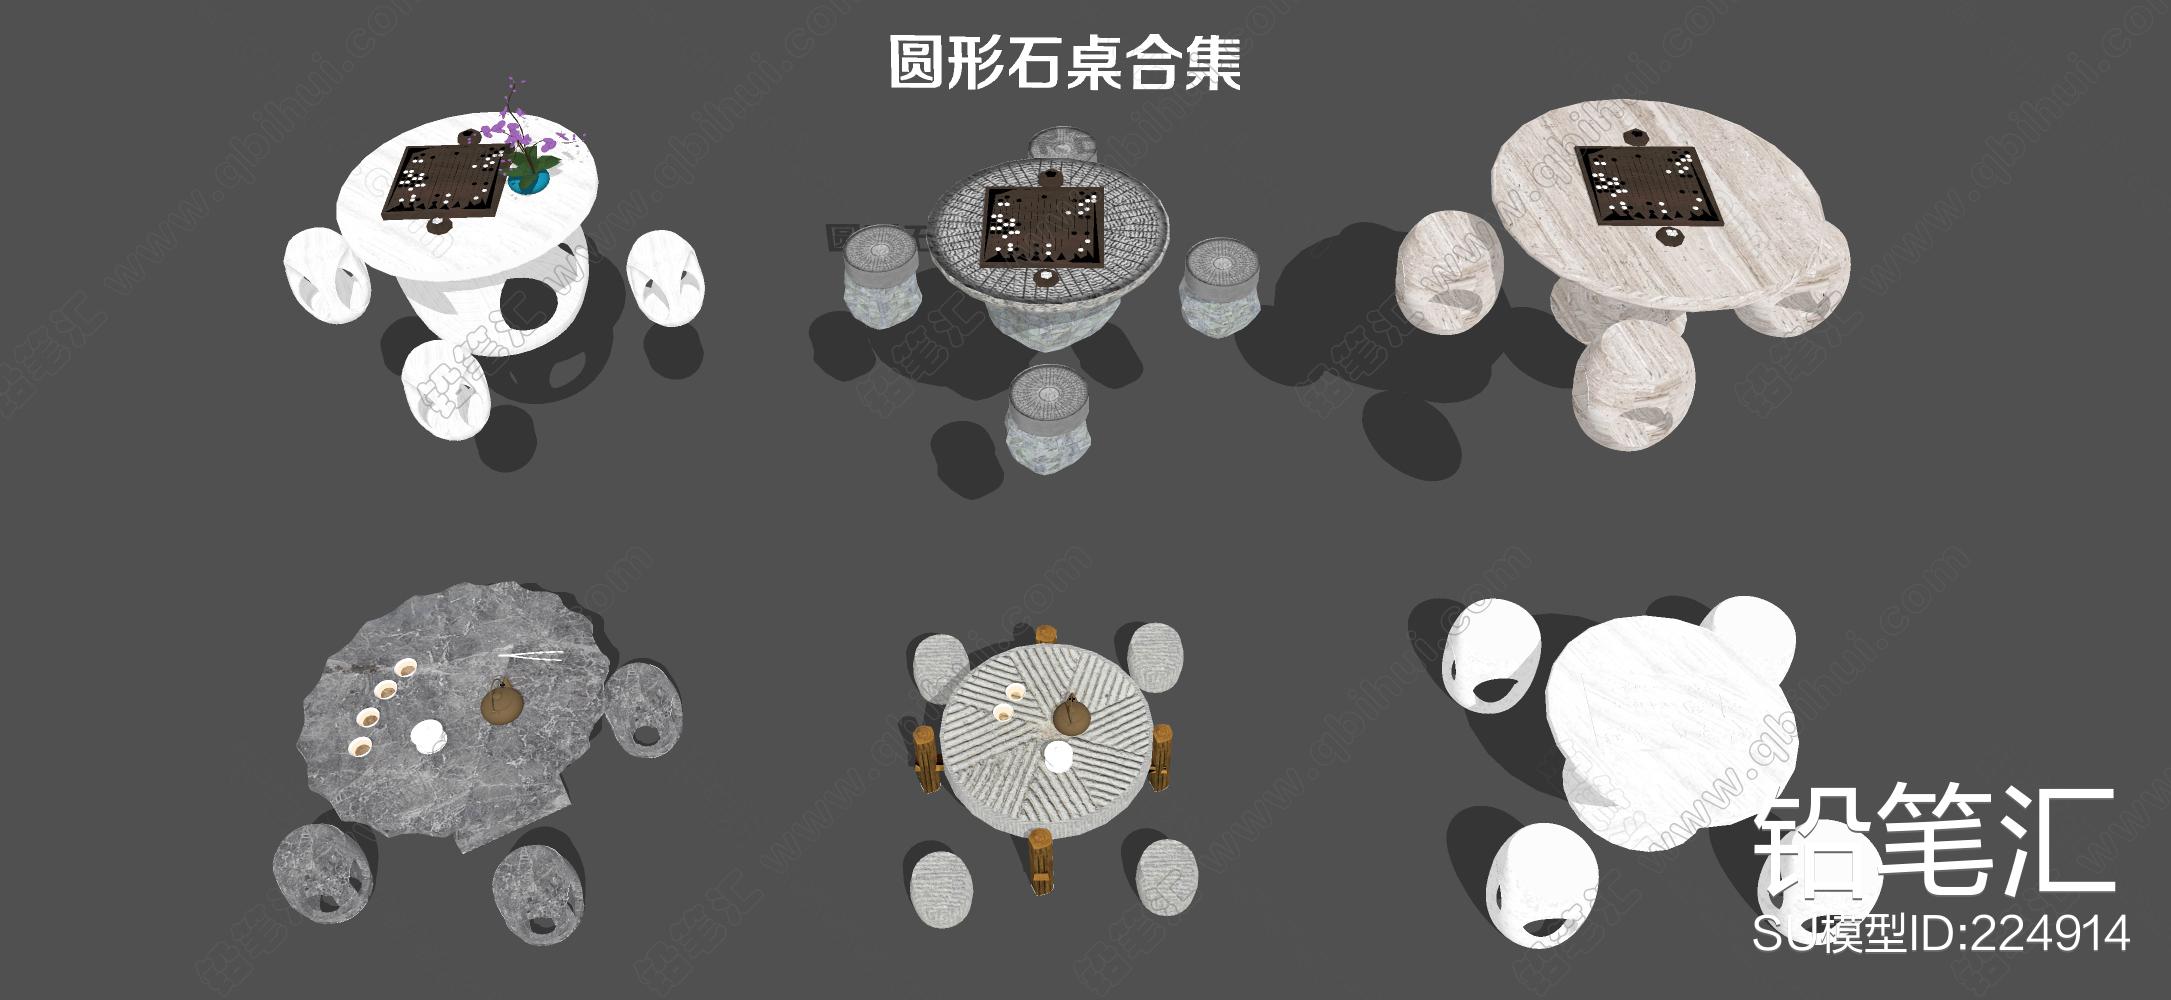 中式庭院石桌石凳模型SU模型下载[ID:103239774]_建E室内设计网